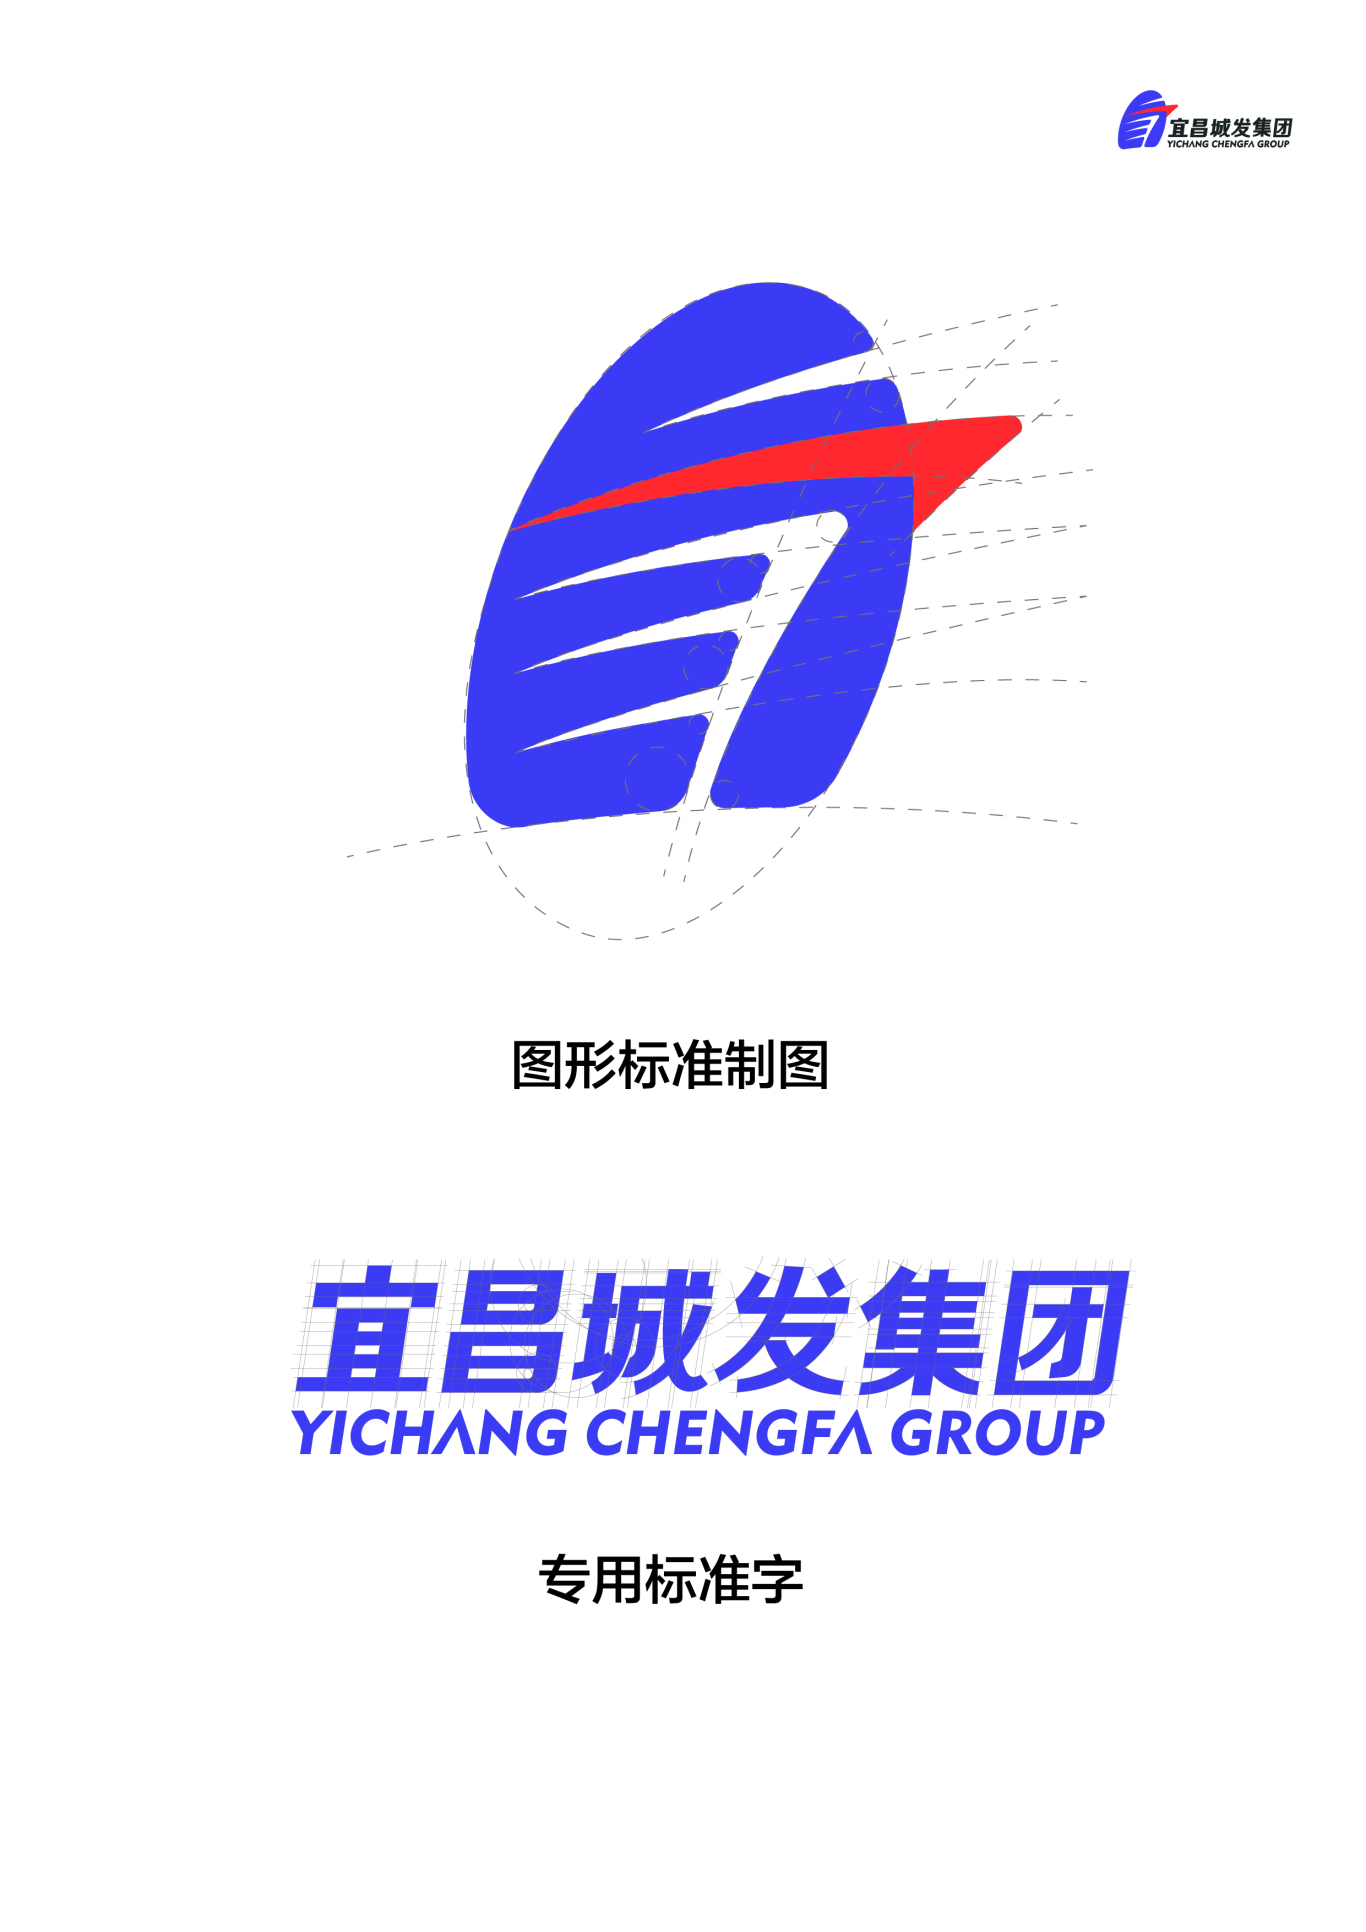 宜昌城发logo图1